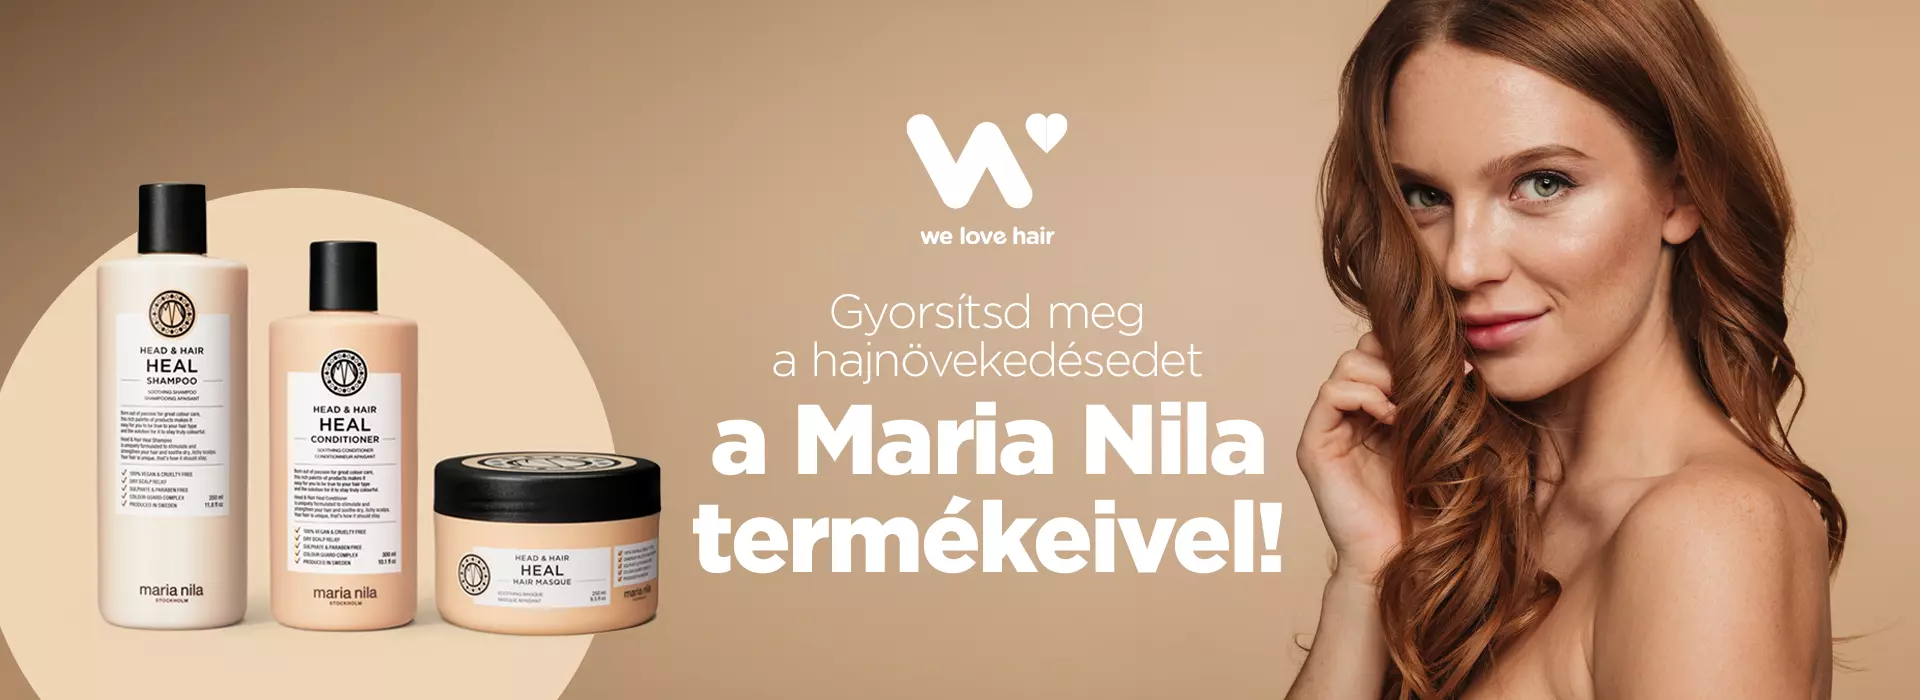 maria nila head&hair heal